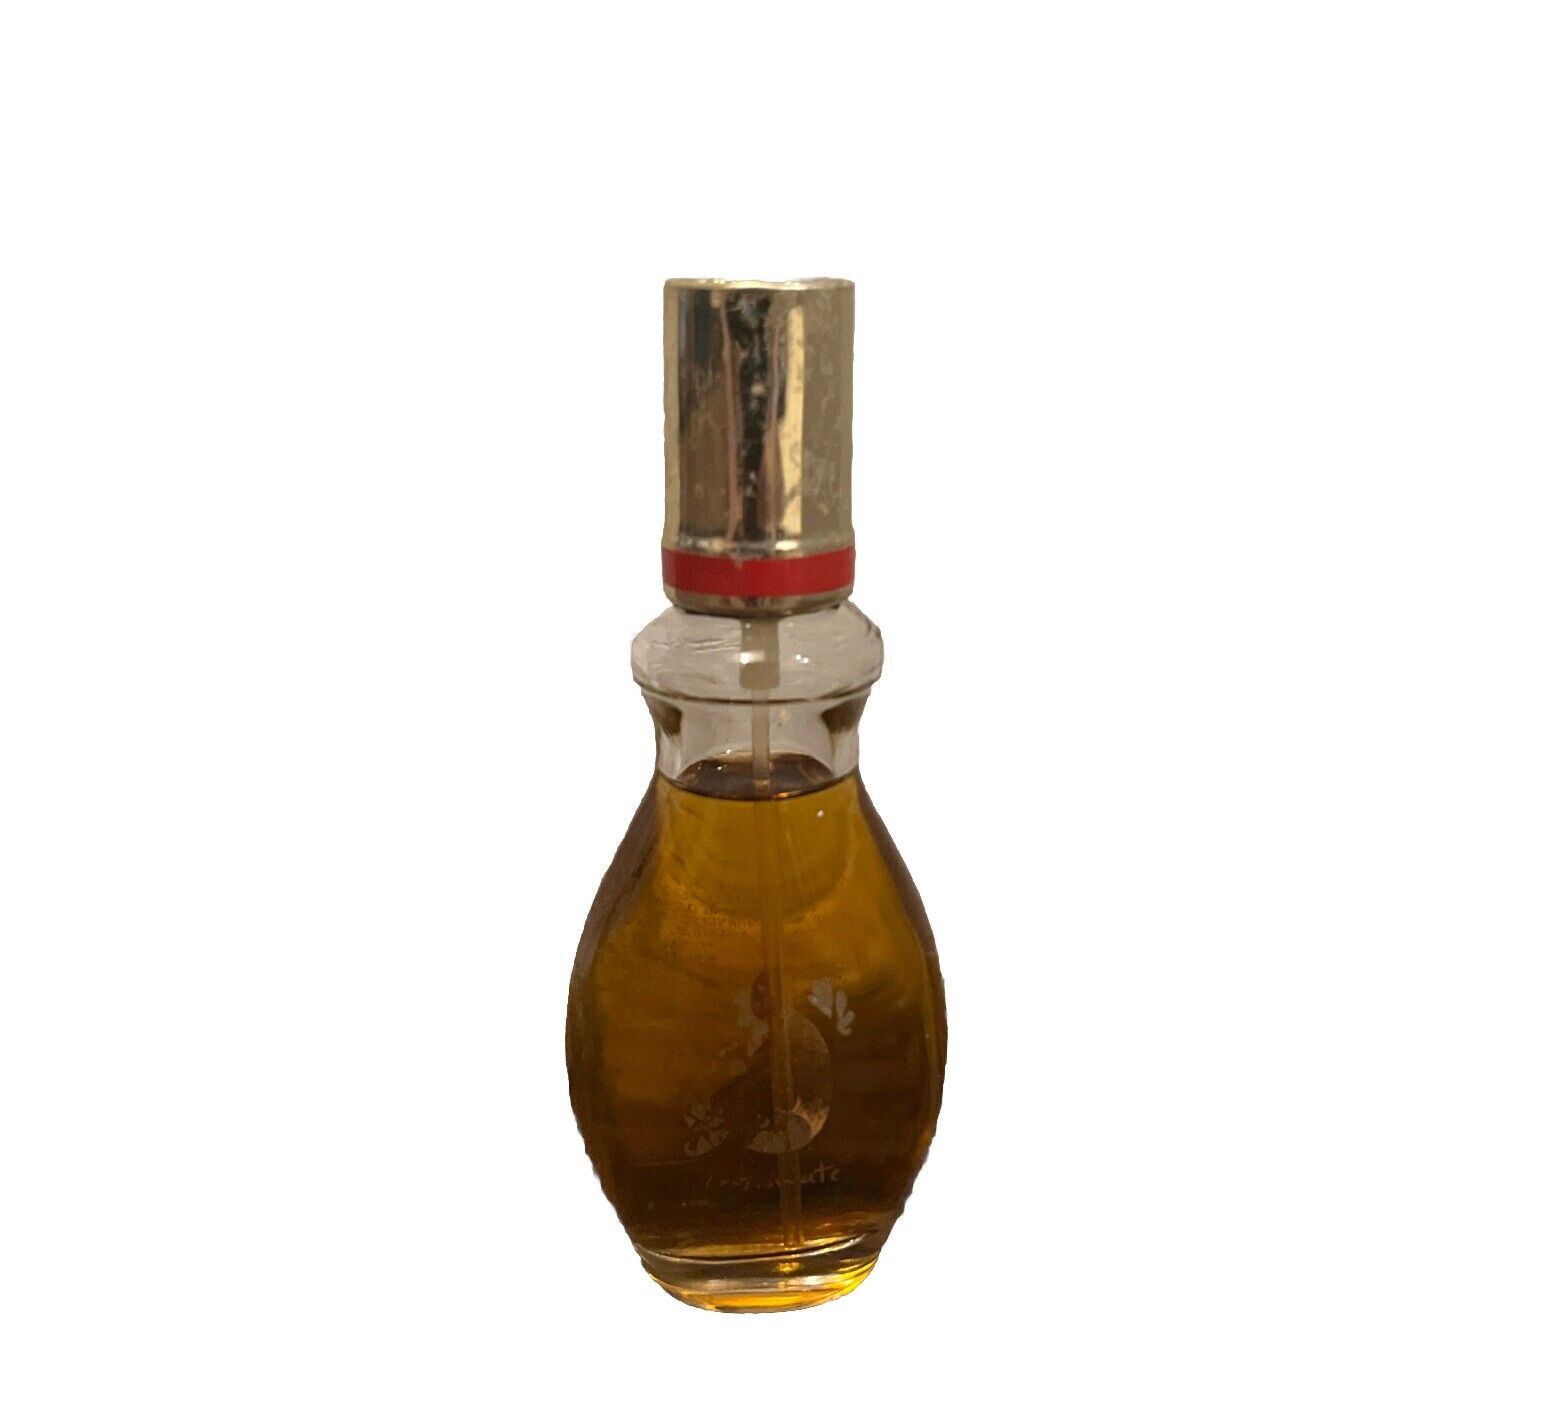 VTG Revlon Intimate Cologne Spray Womens Fragrance 1 oz 28g Glass Bottle RJ22